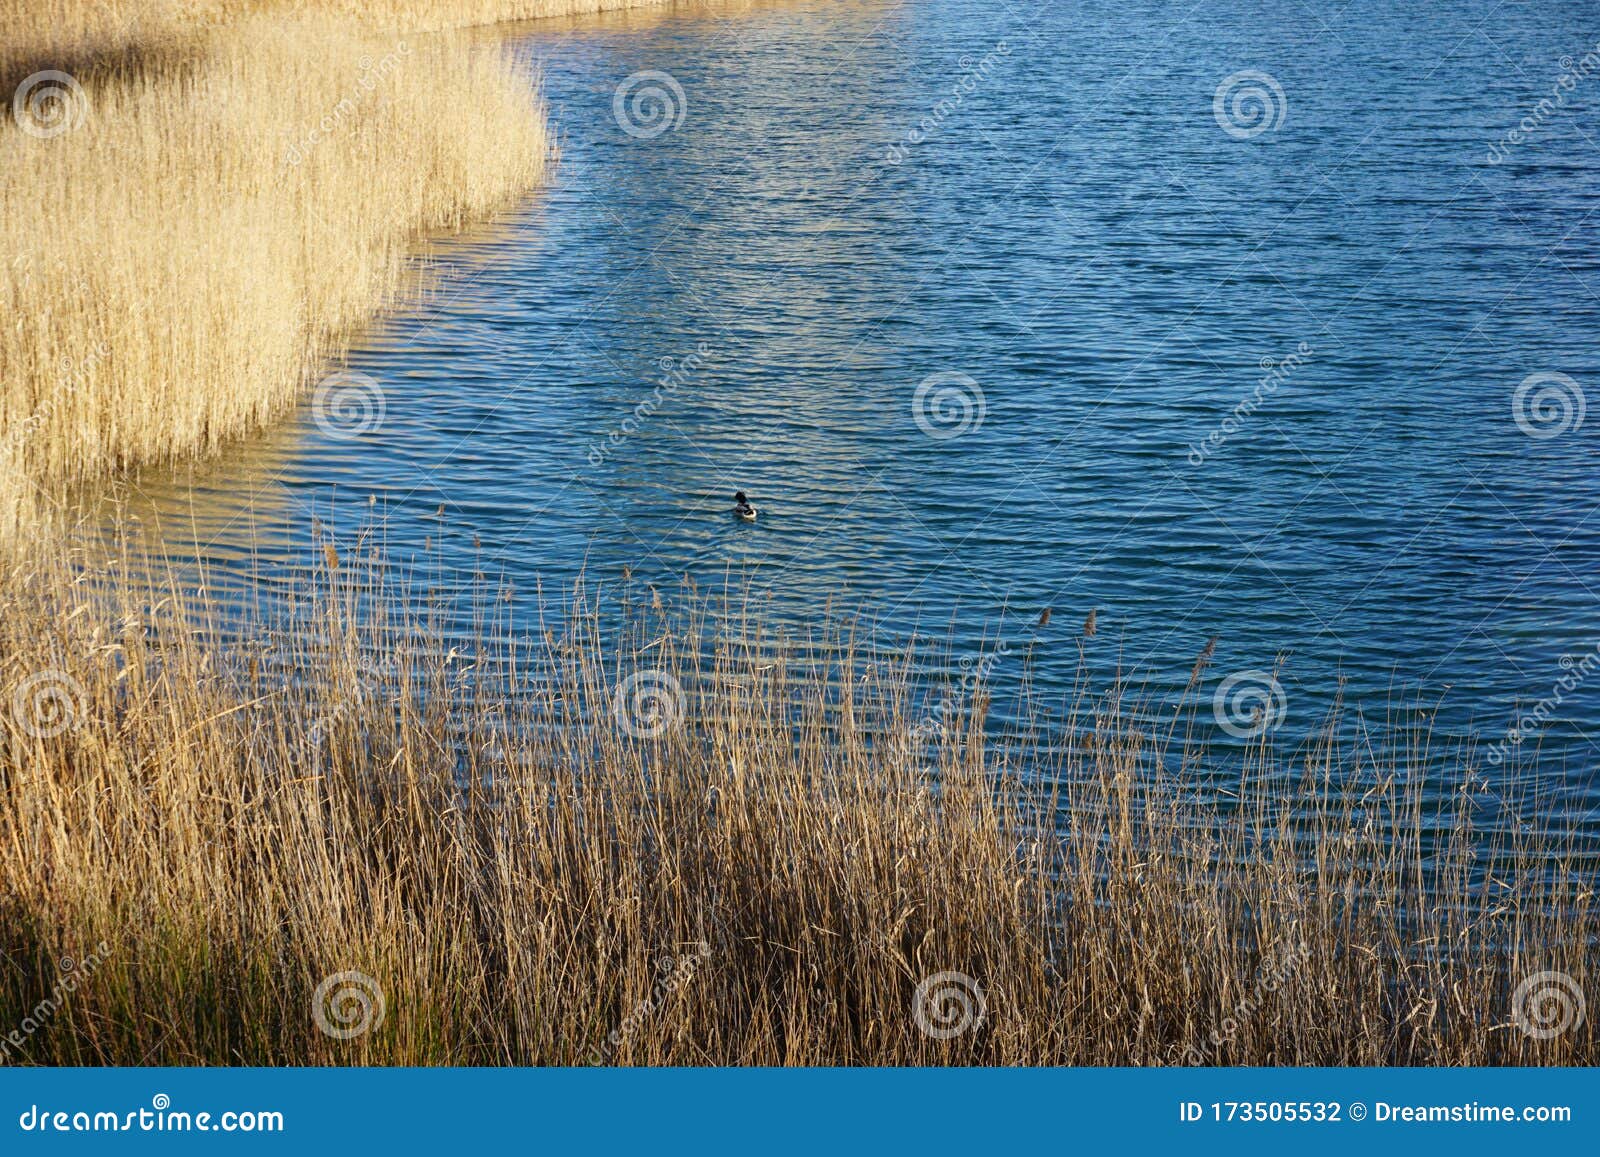 swimming alone in the pond. nadando sÃÂ³lo en el lago.